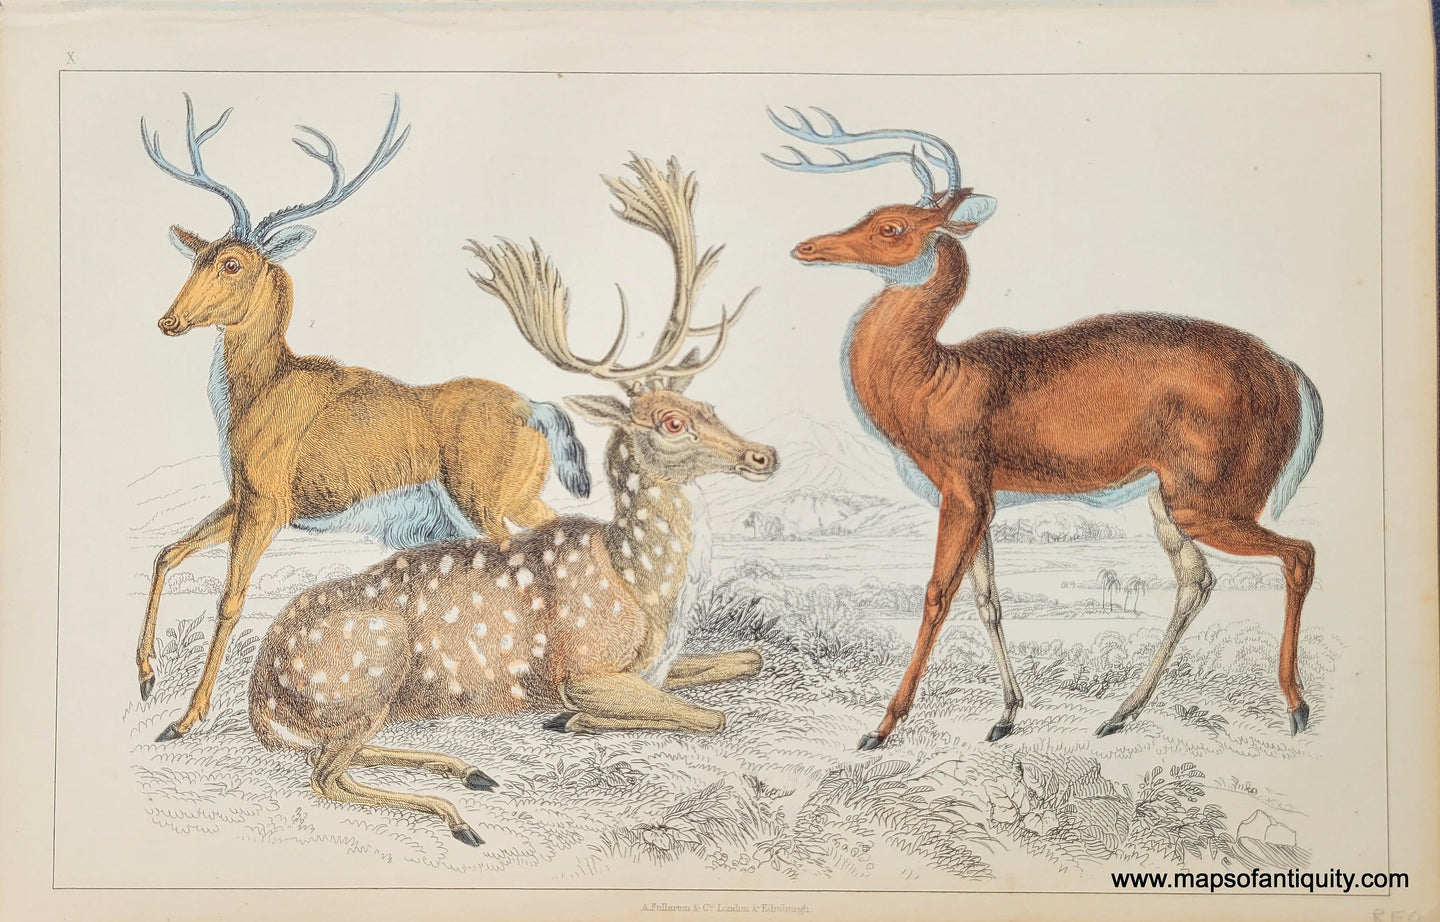 Genuine-Antique-Print-Deer-1850-Fullarton-Maps-Of-Antiquity